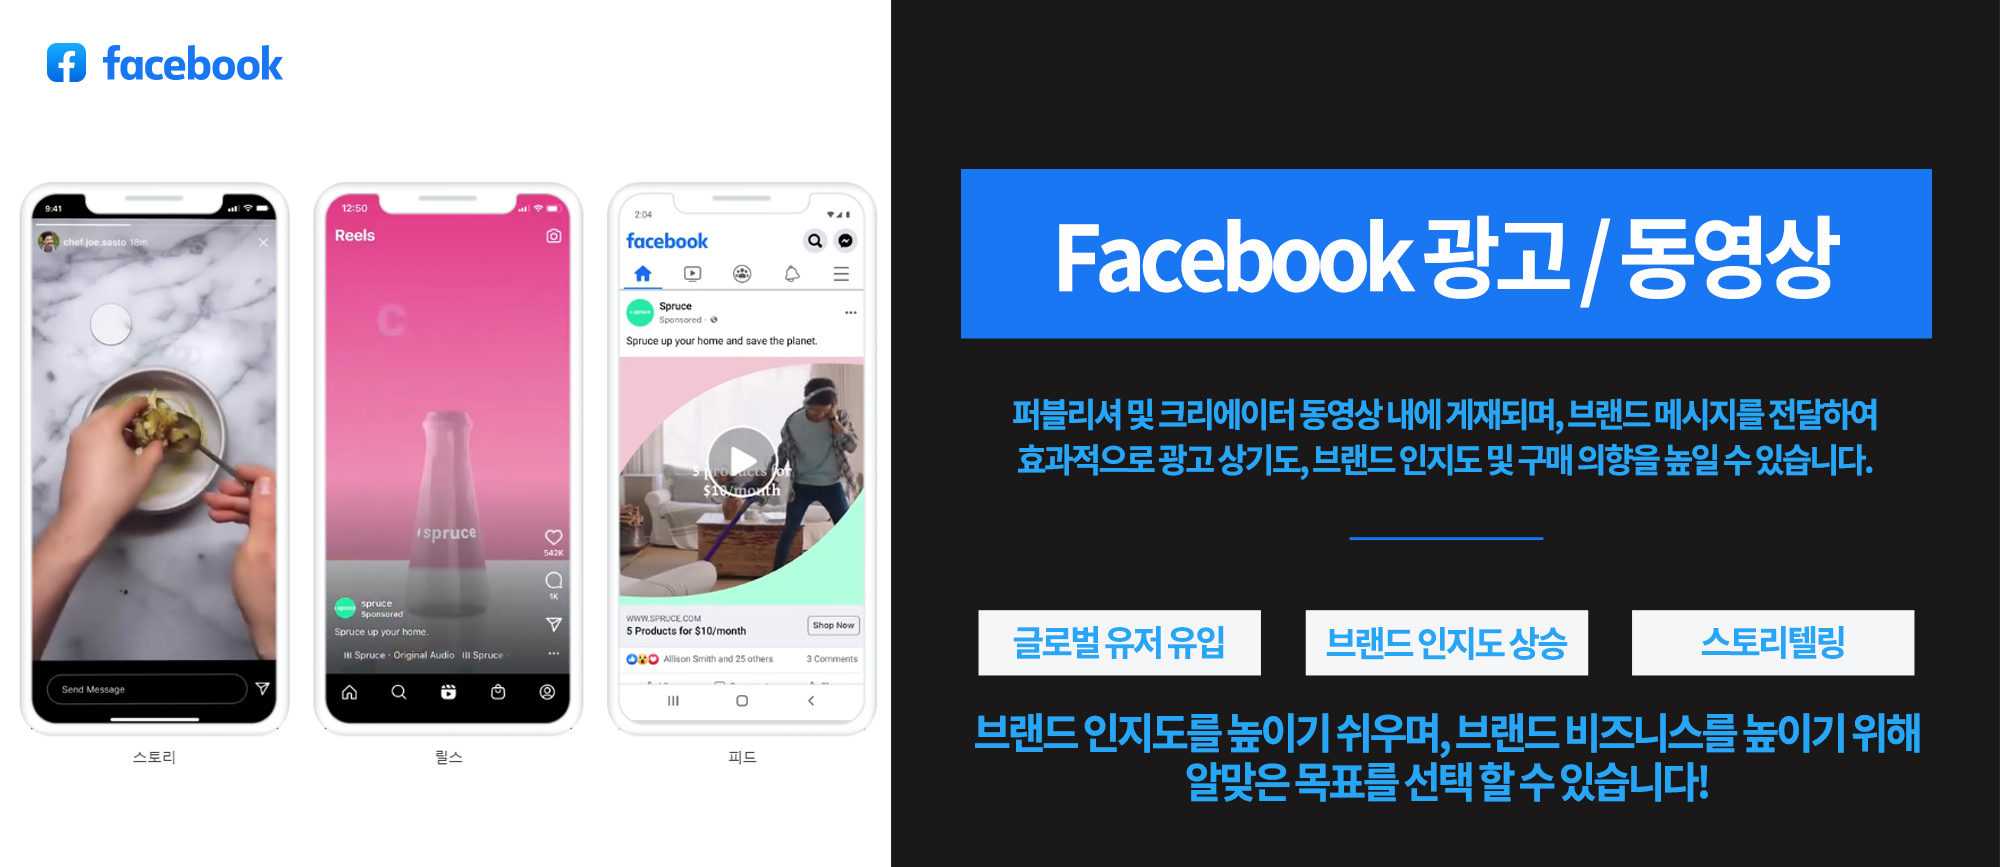 페이스북 광고를 통한 영상 메시지 전달